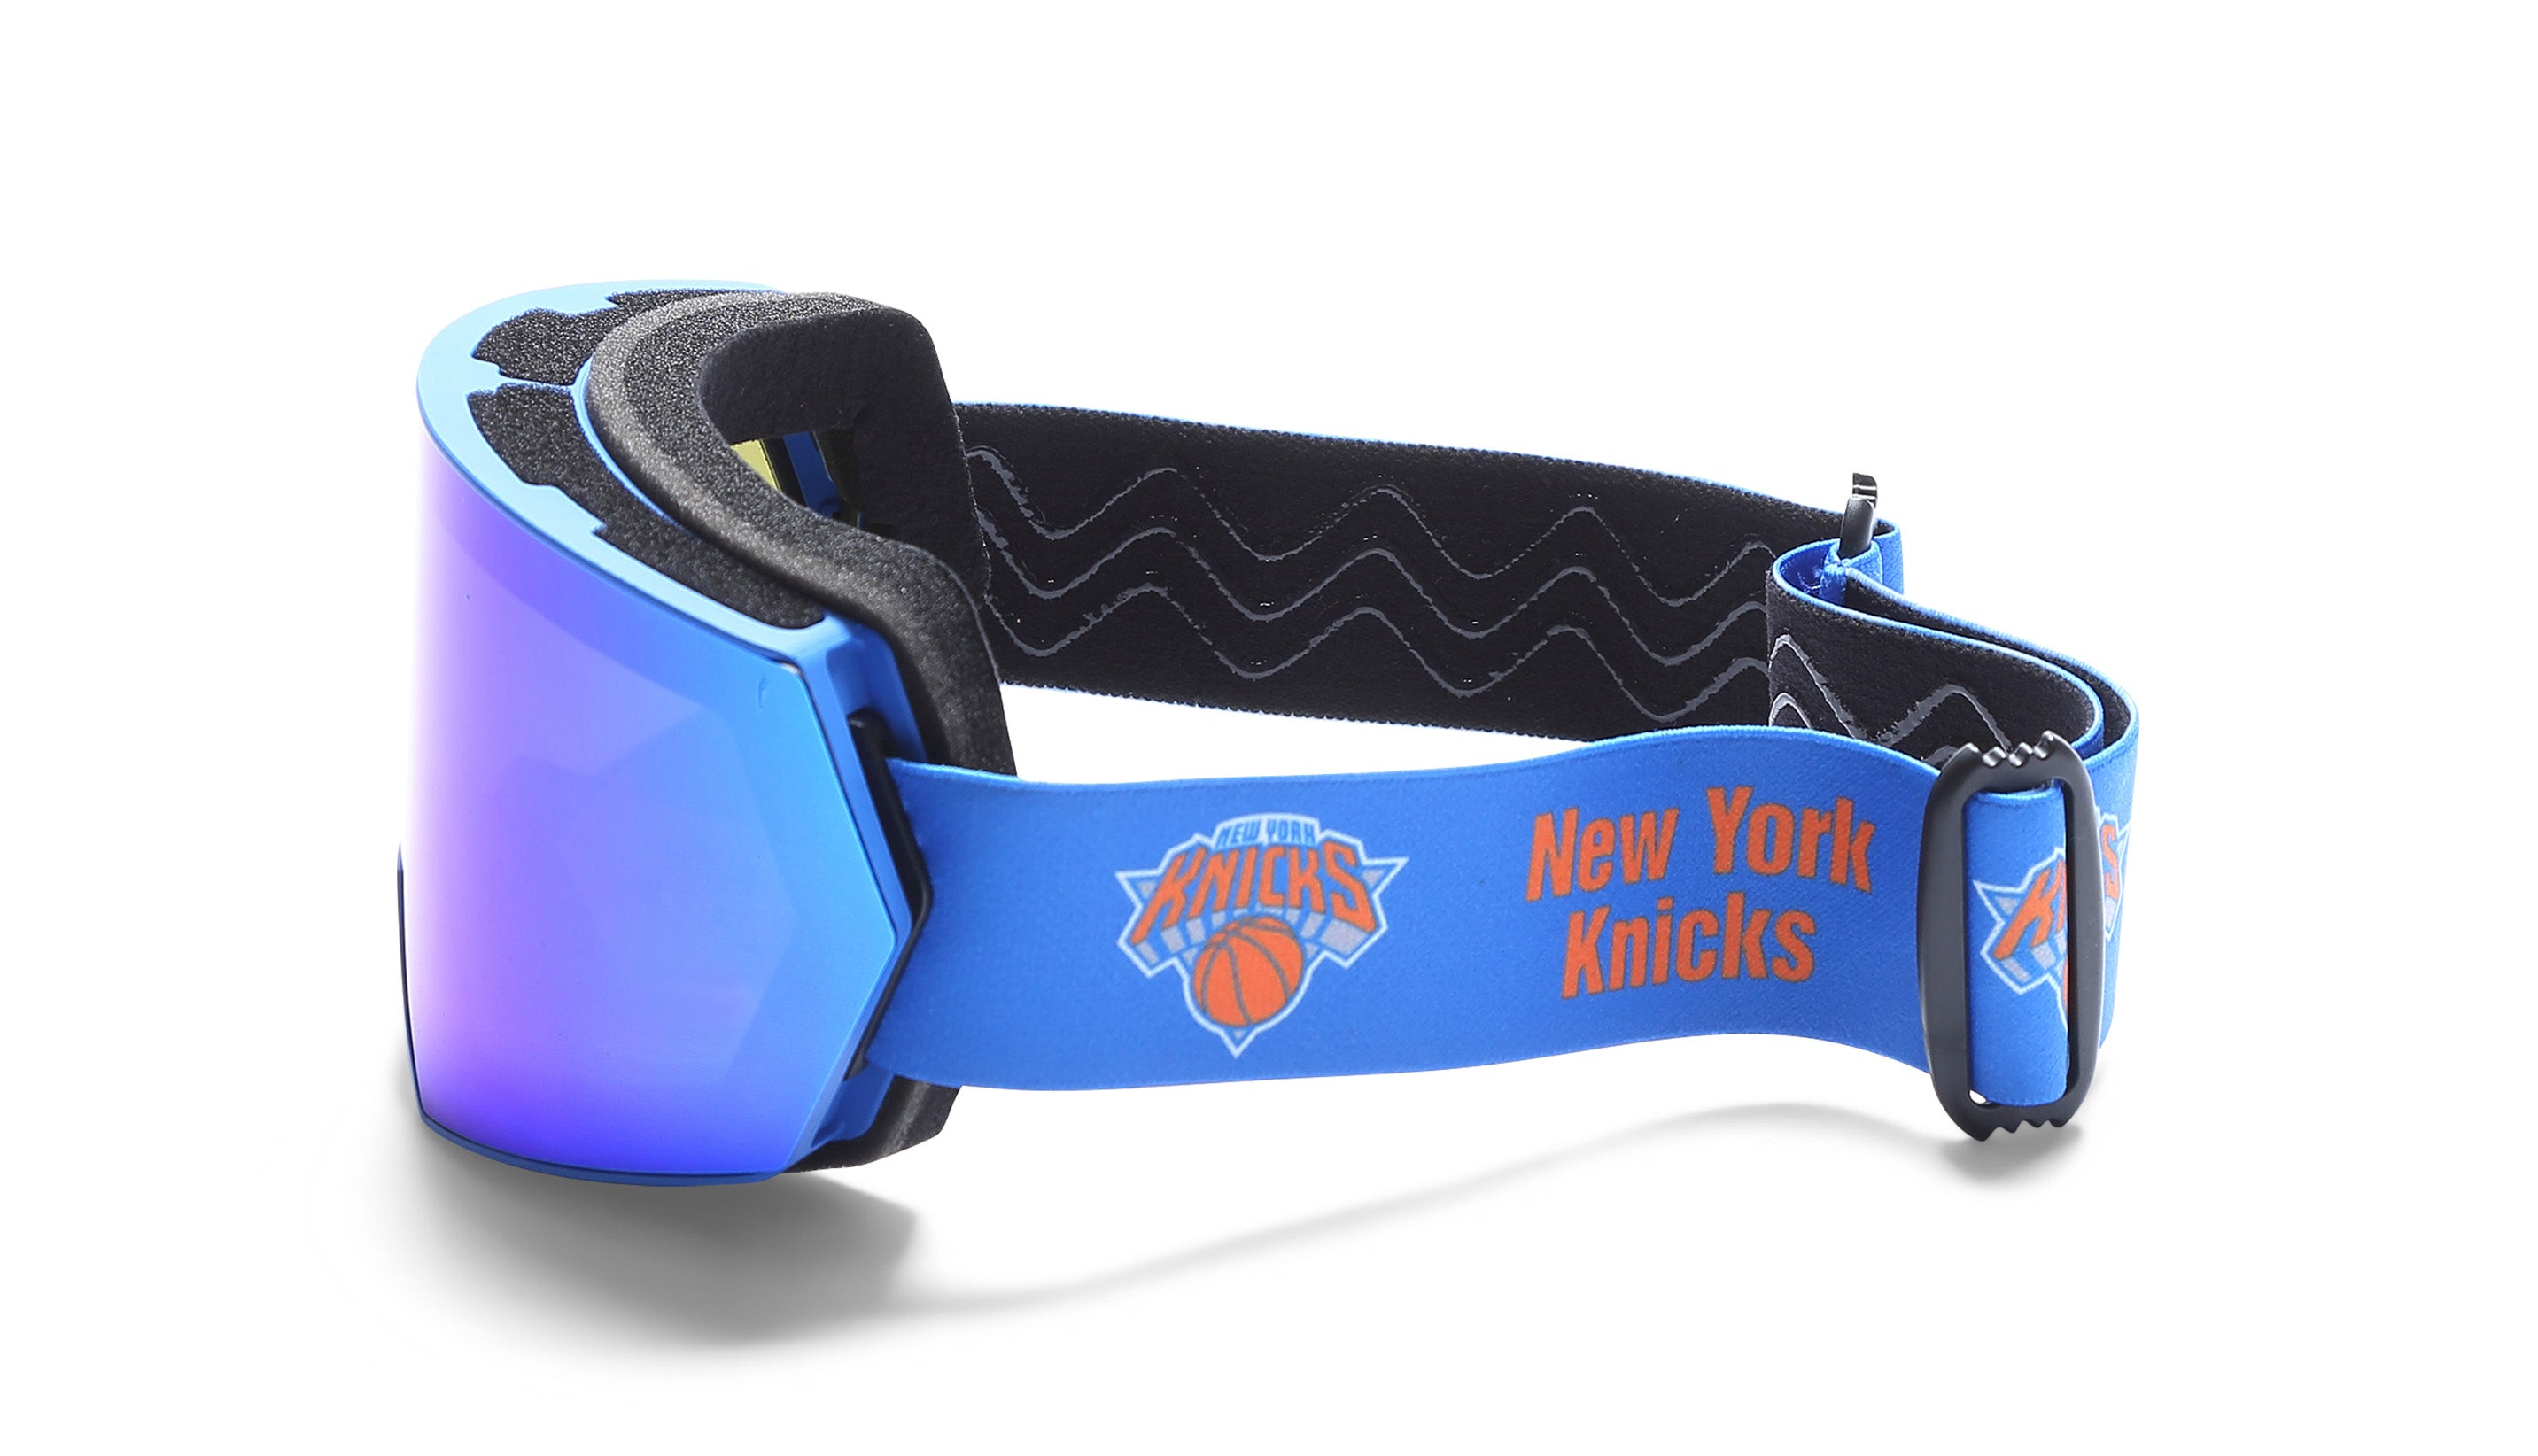 Golden State Warriors Ski Goggles - Matador Project